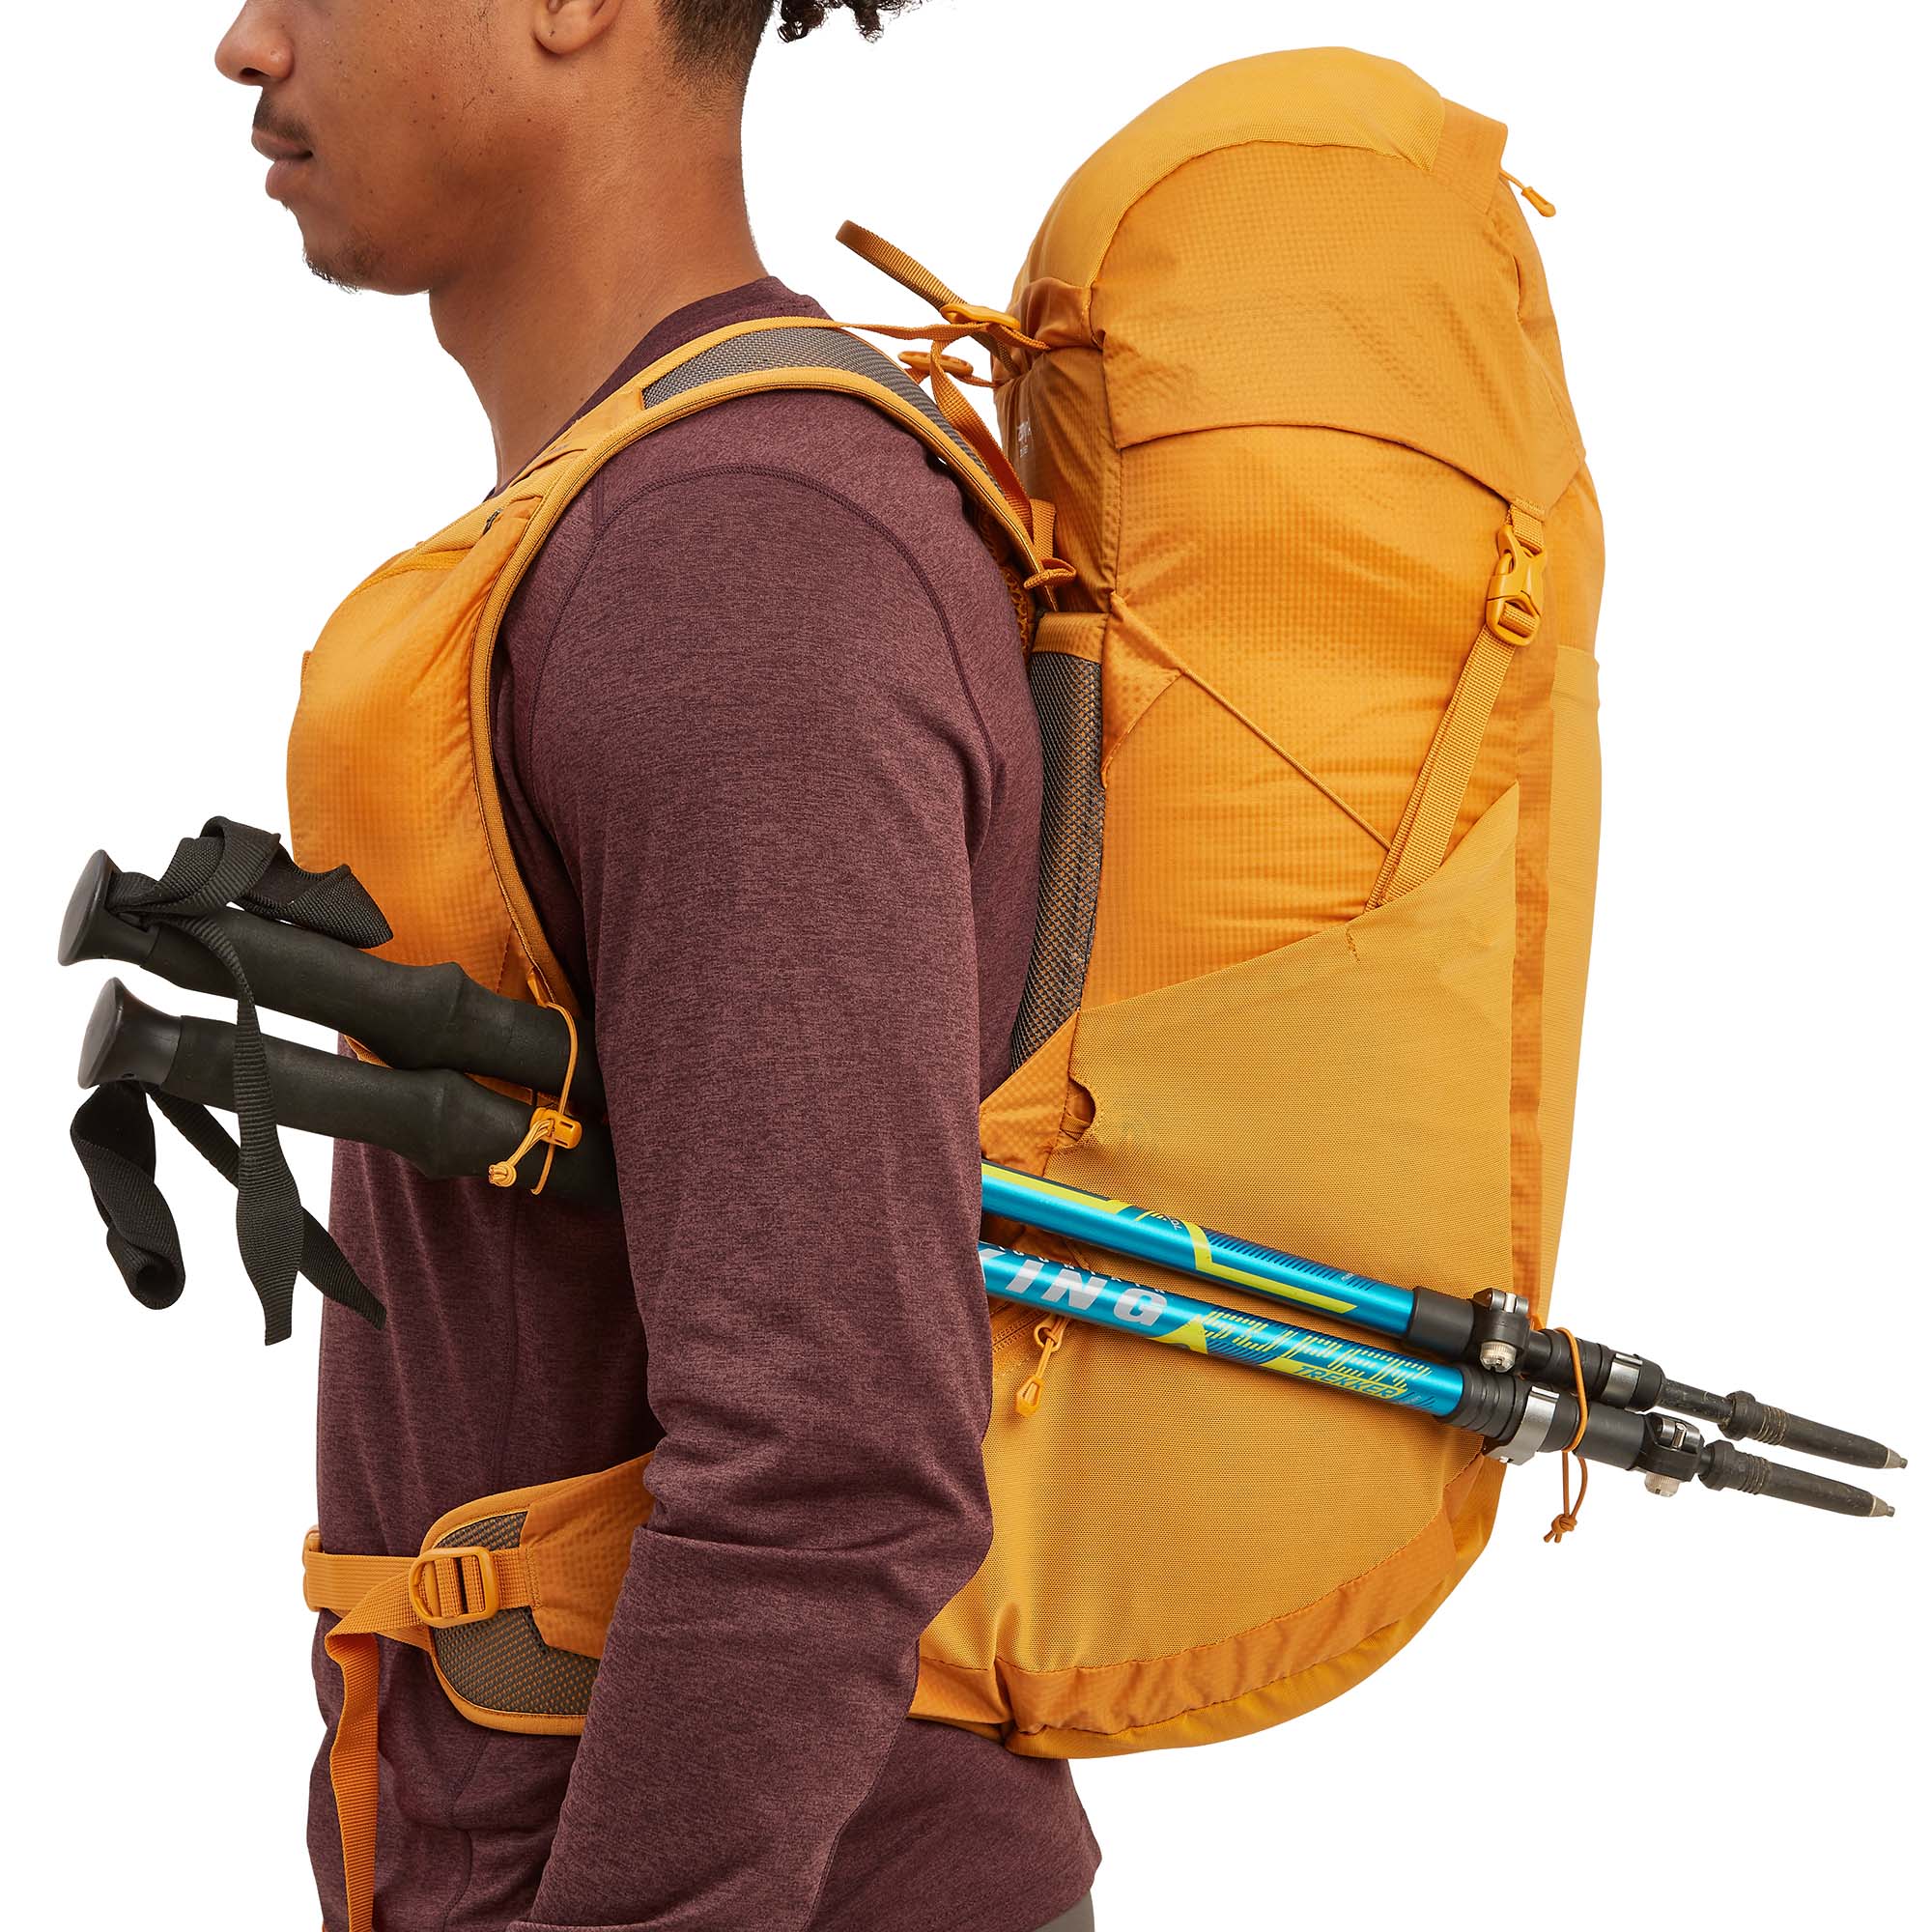 Montane Trailblazer 32 Trekking Backpack